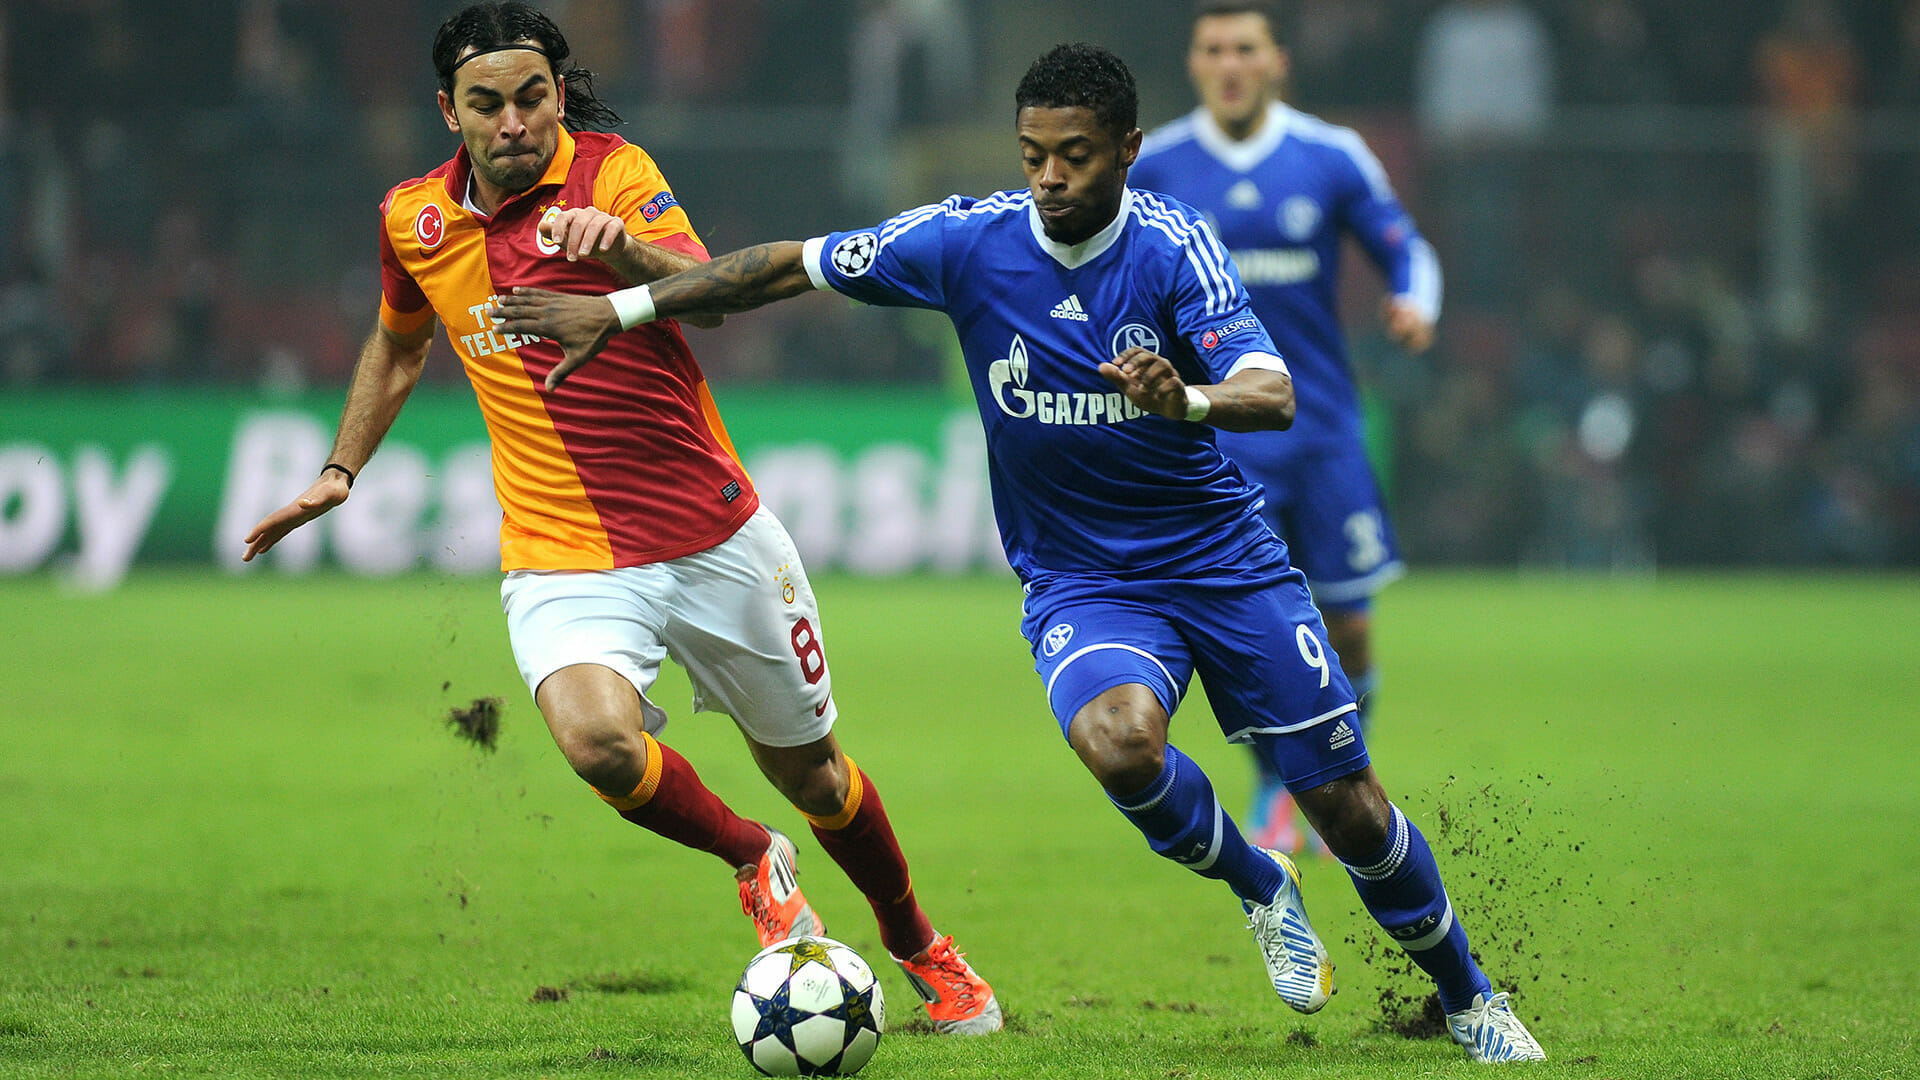 Schalke vs. Galatasaray 2013